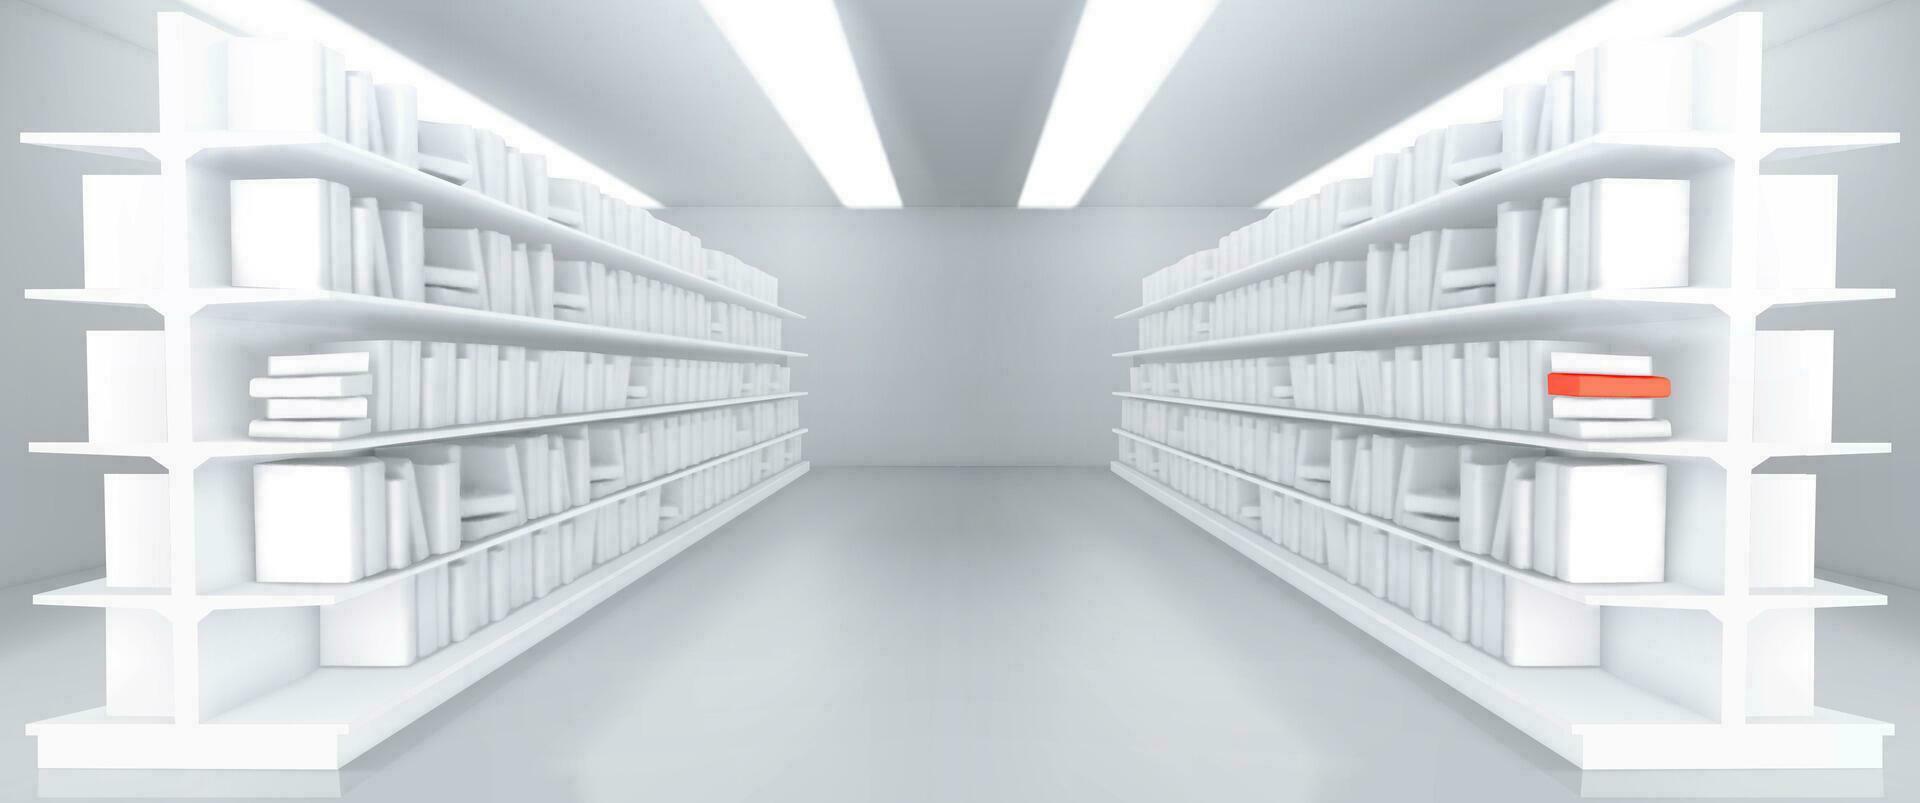 realista librería pasillo con libro maquetas vector